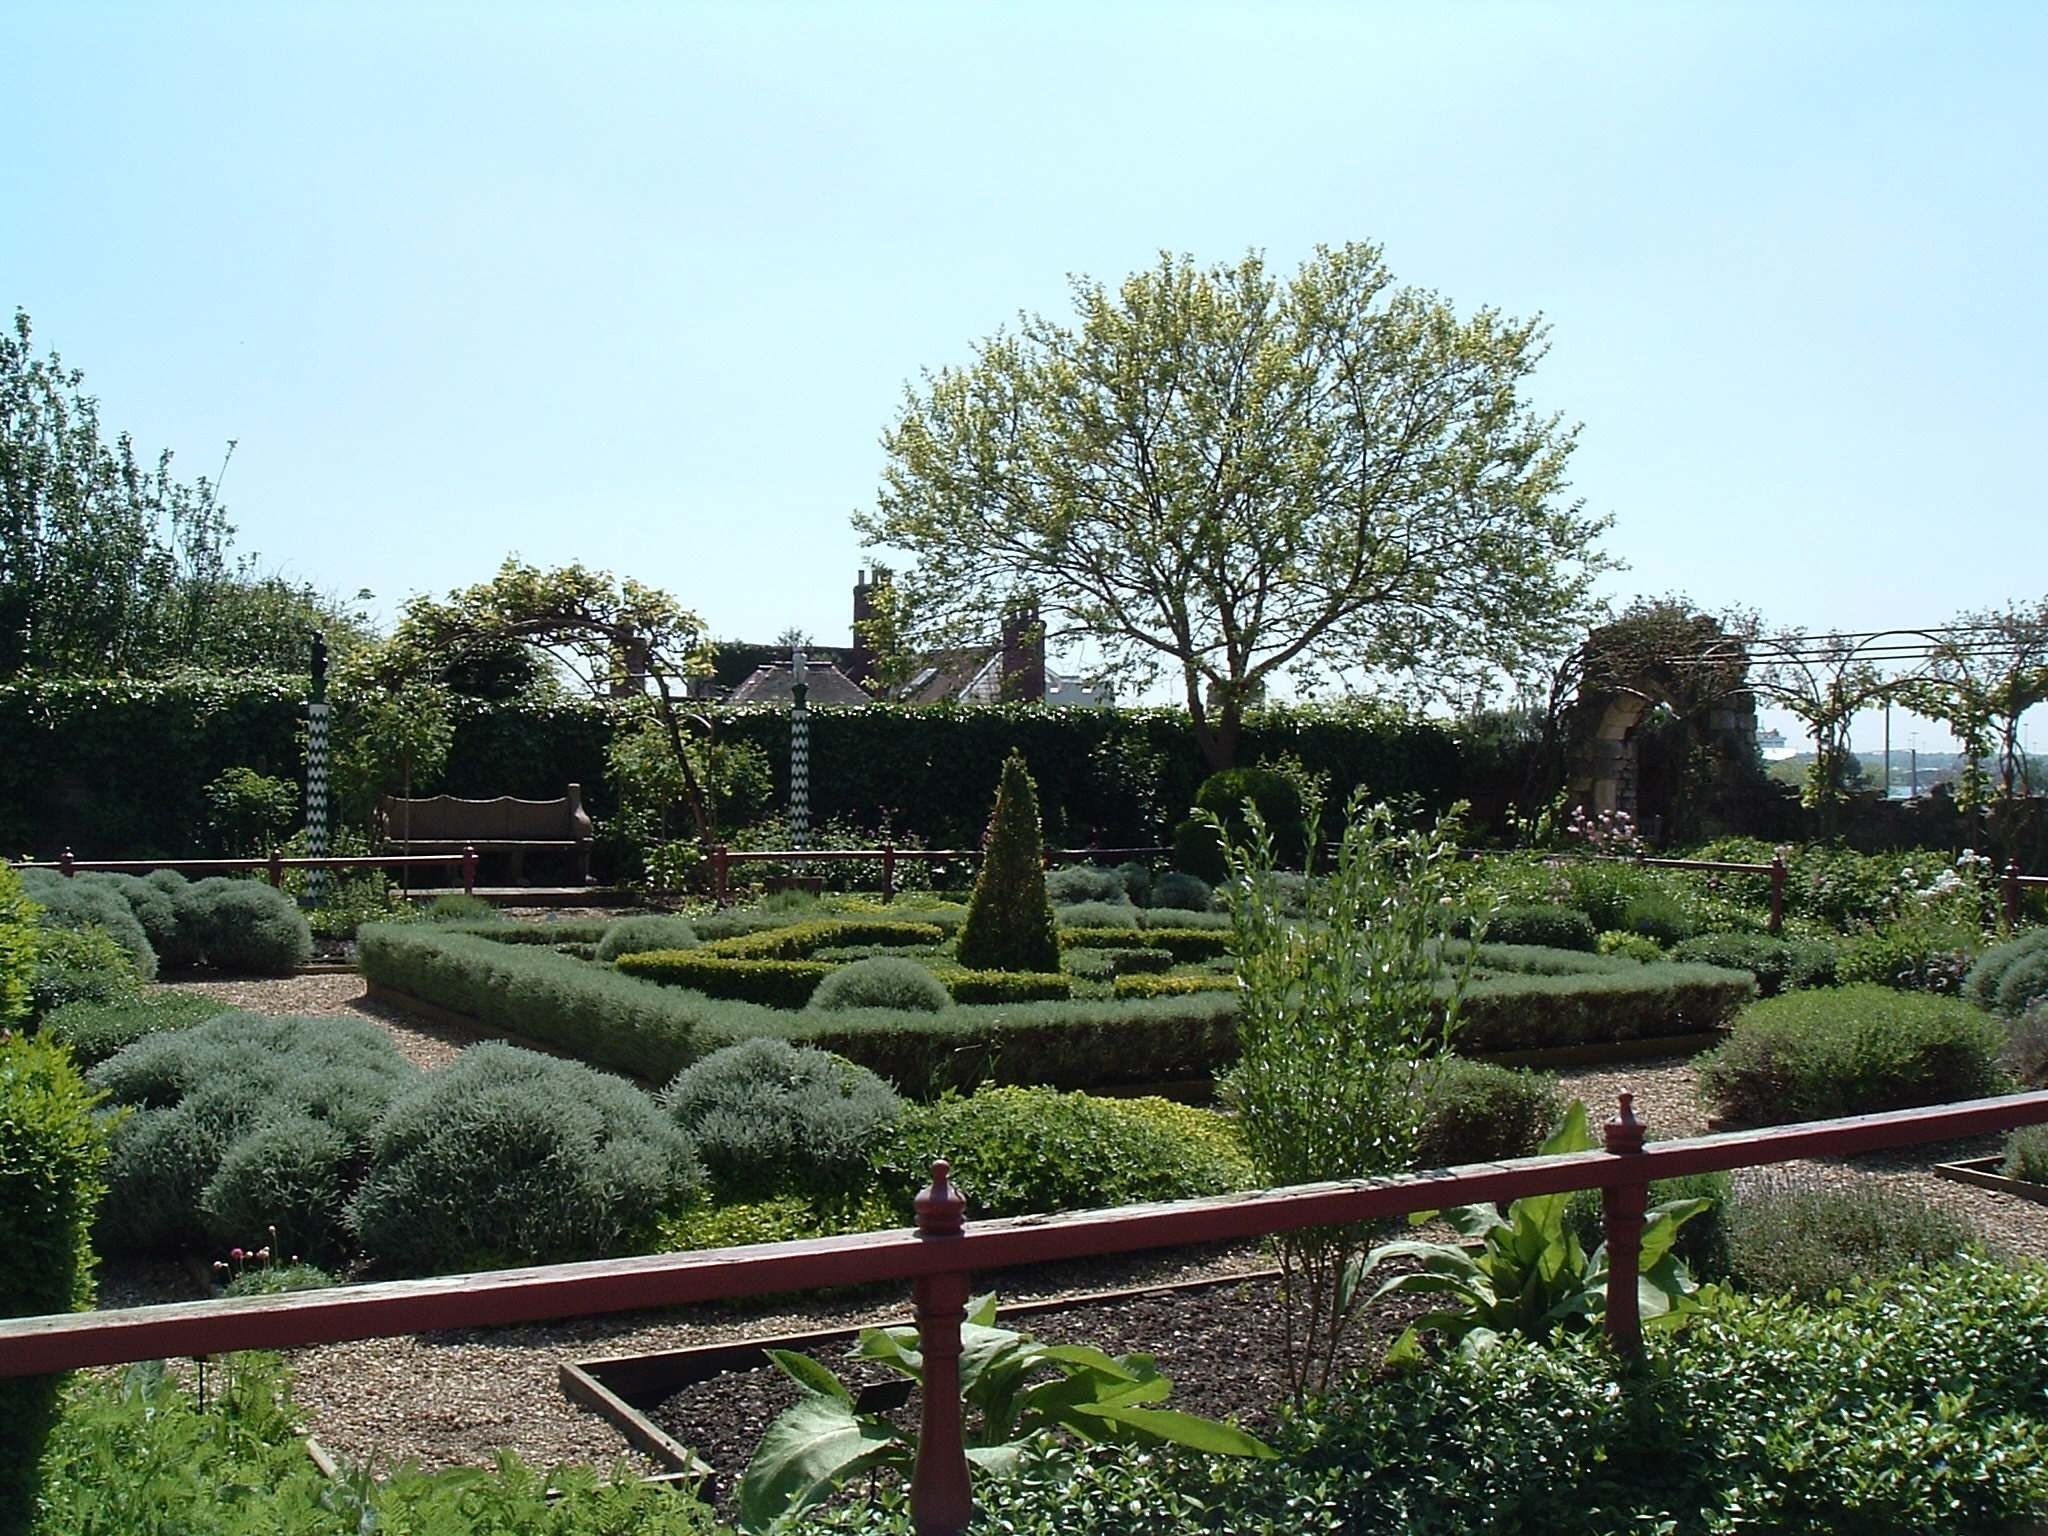 Tudor Gardens